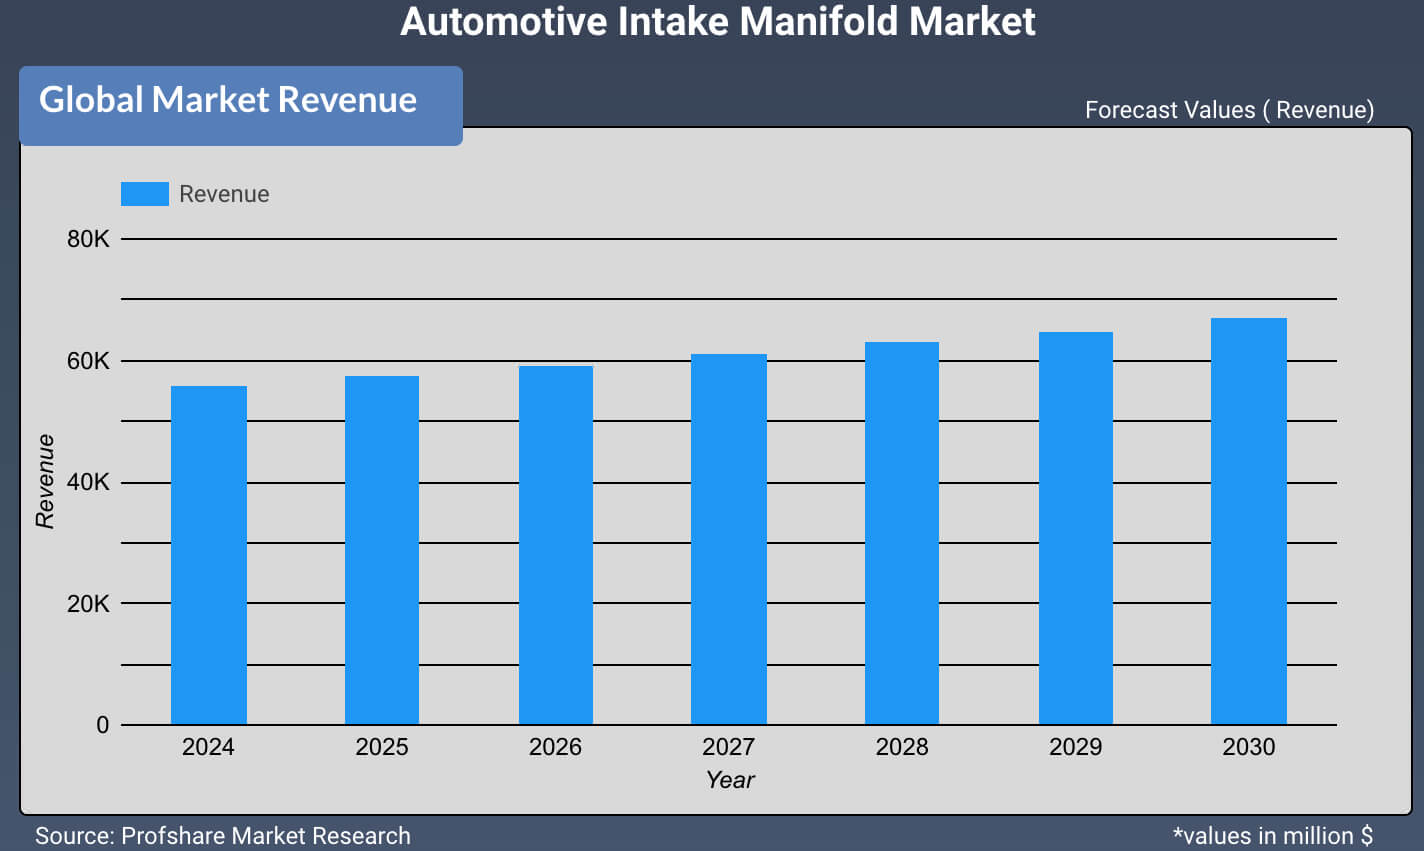 Automotive Drive Shafts Market